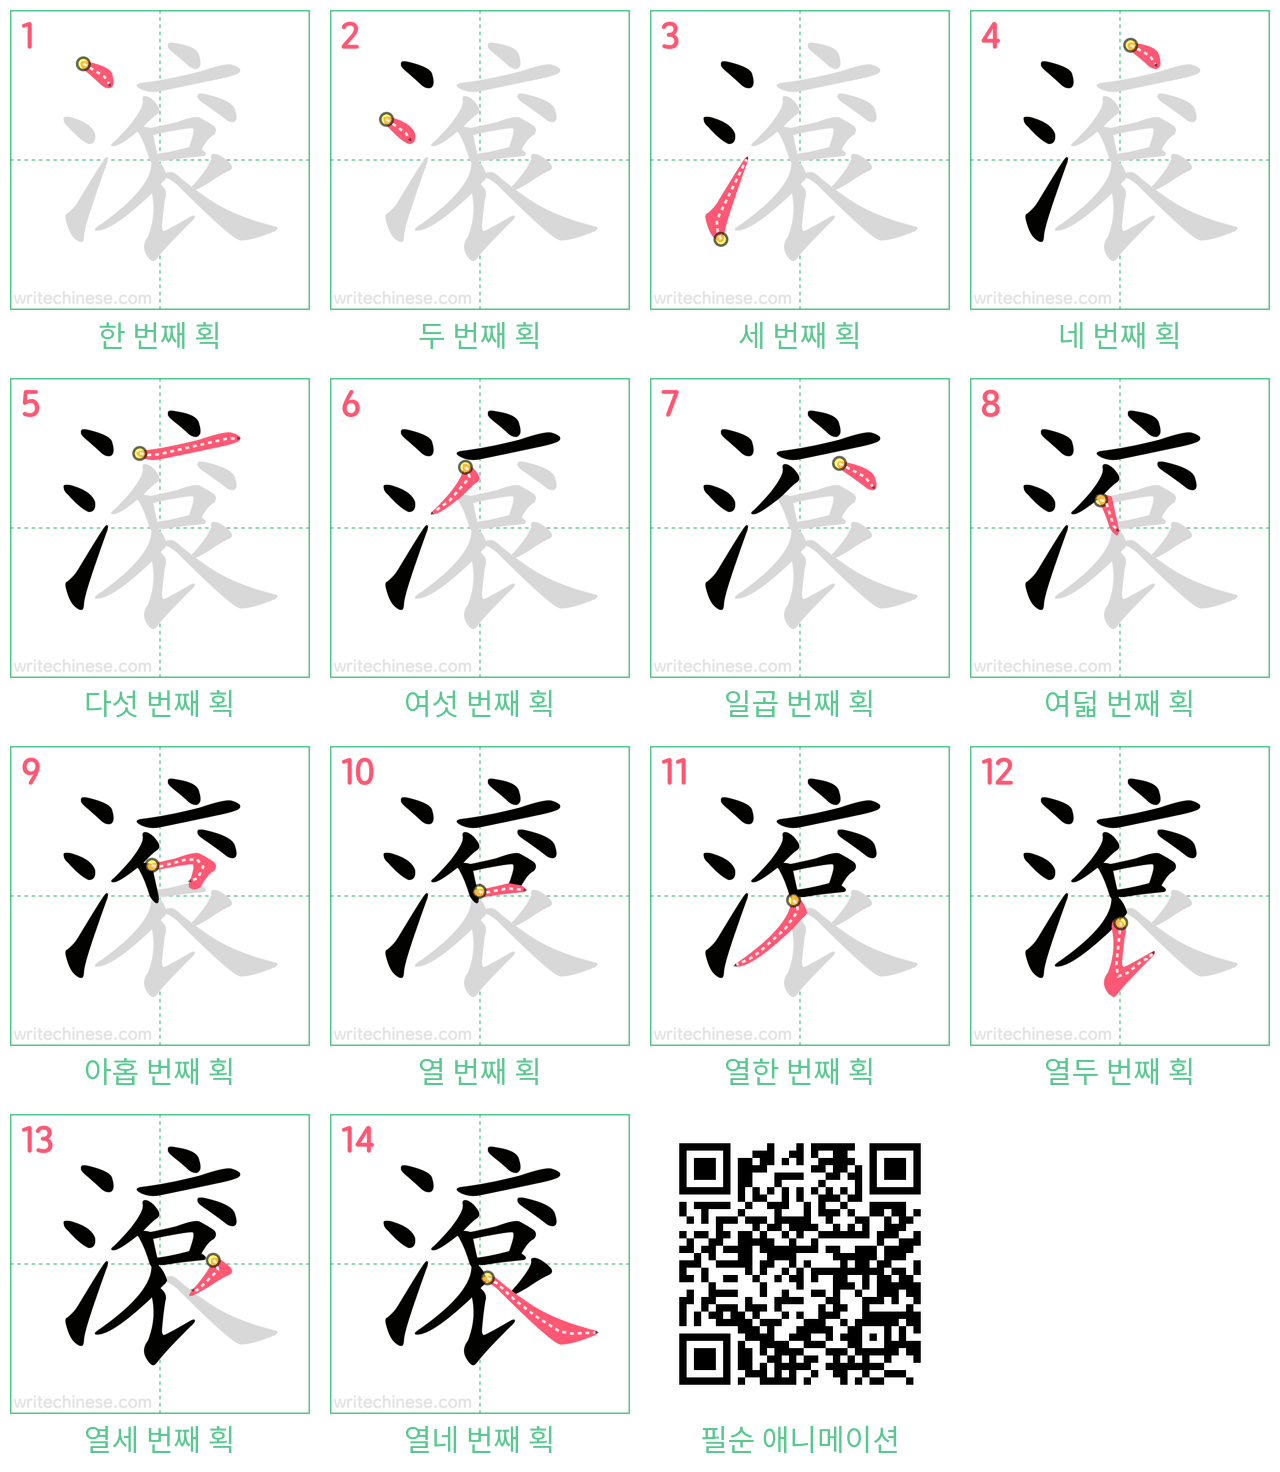 滾 step-by-step stroke order diagrams